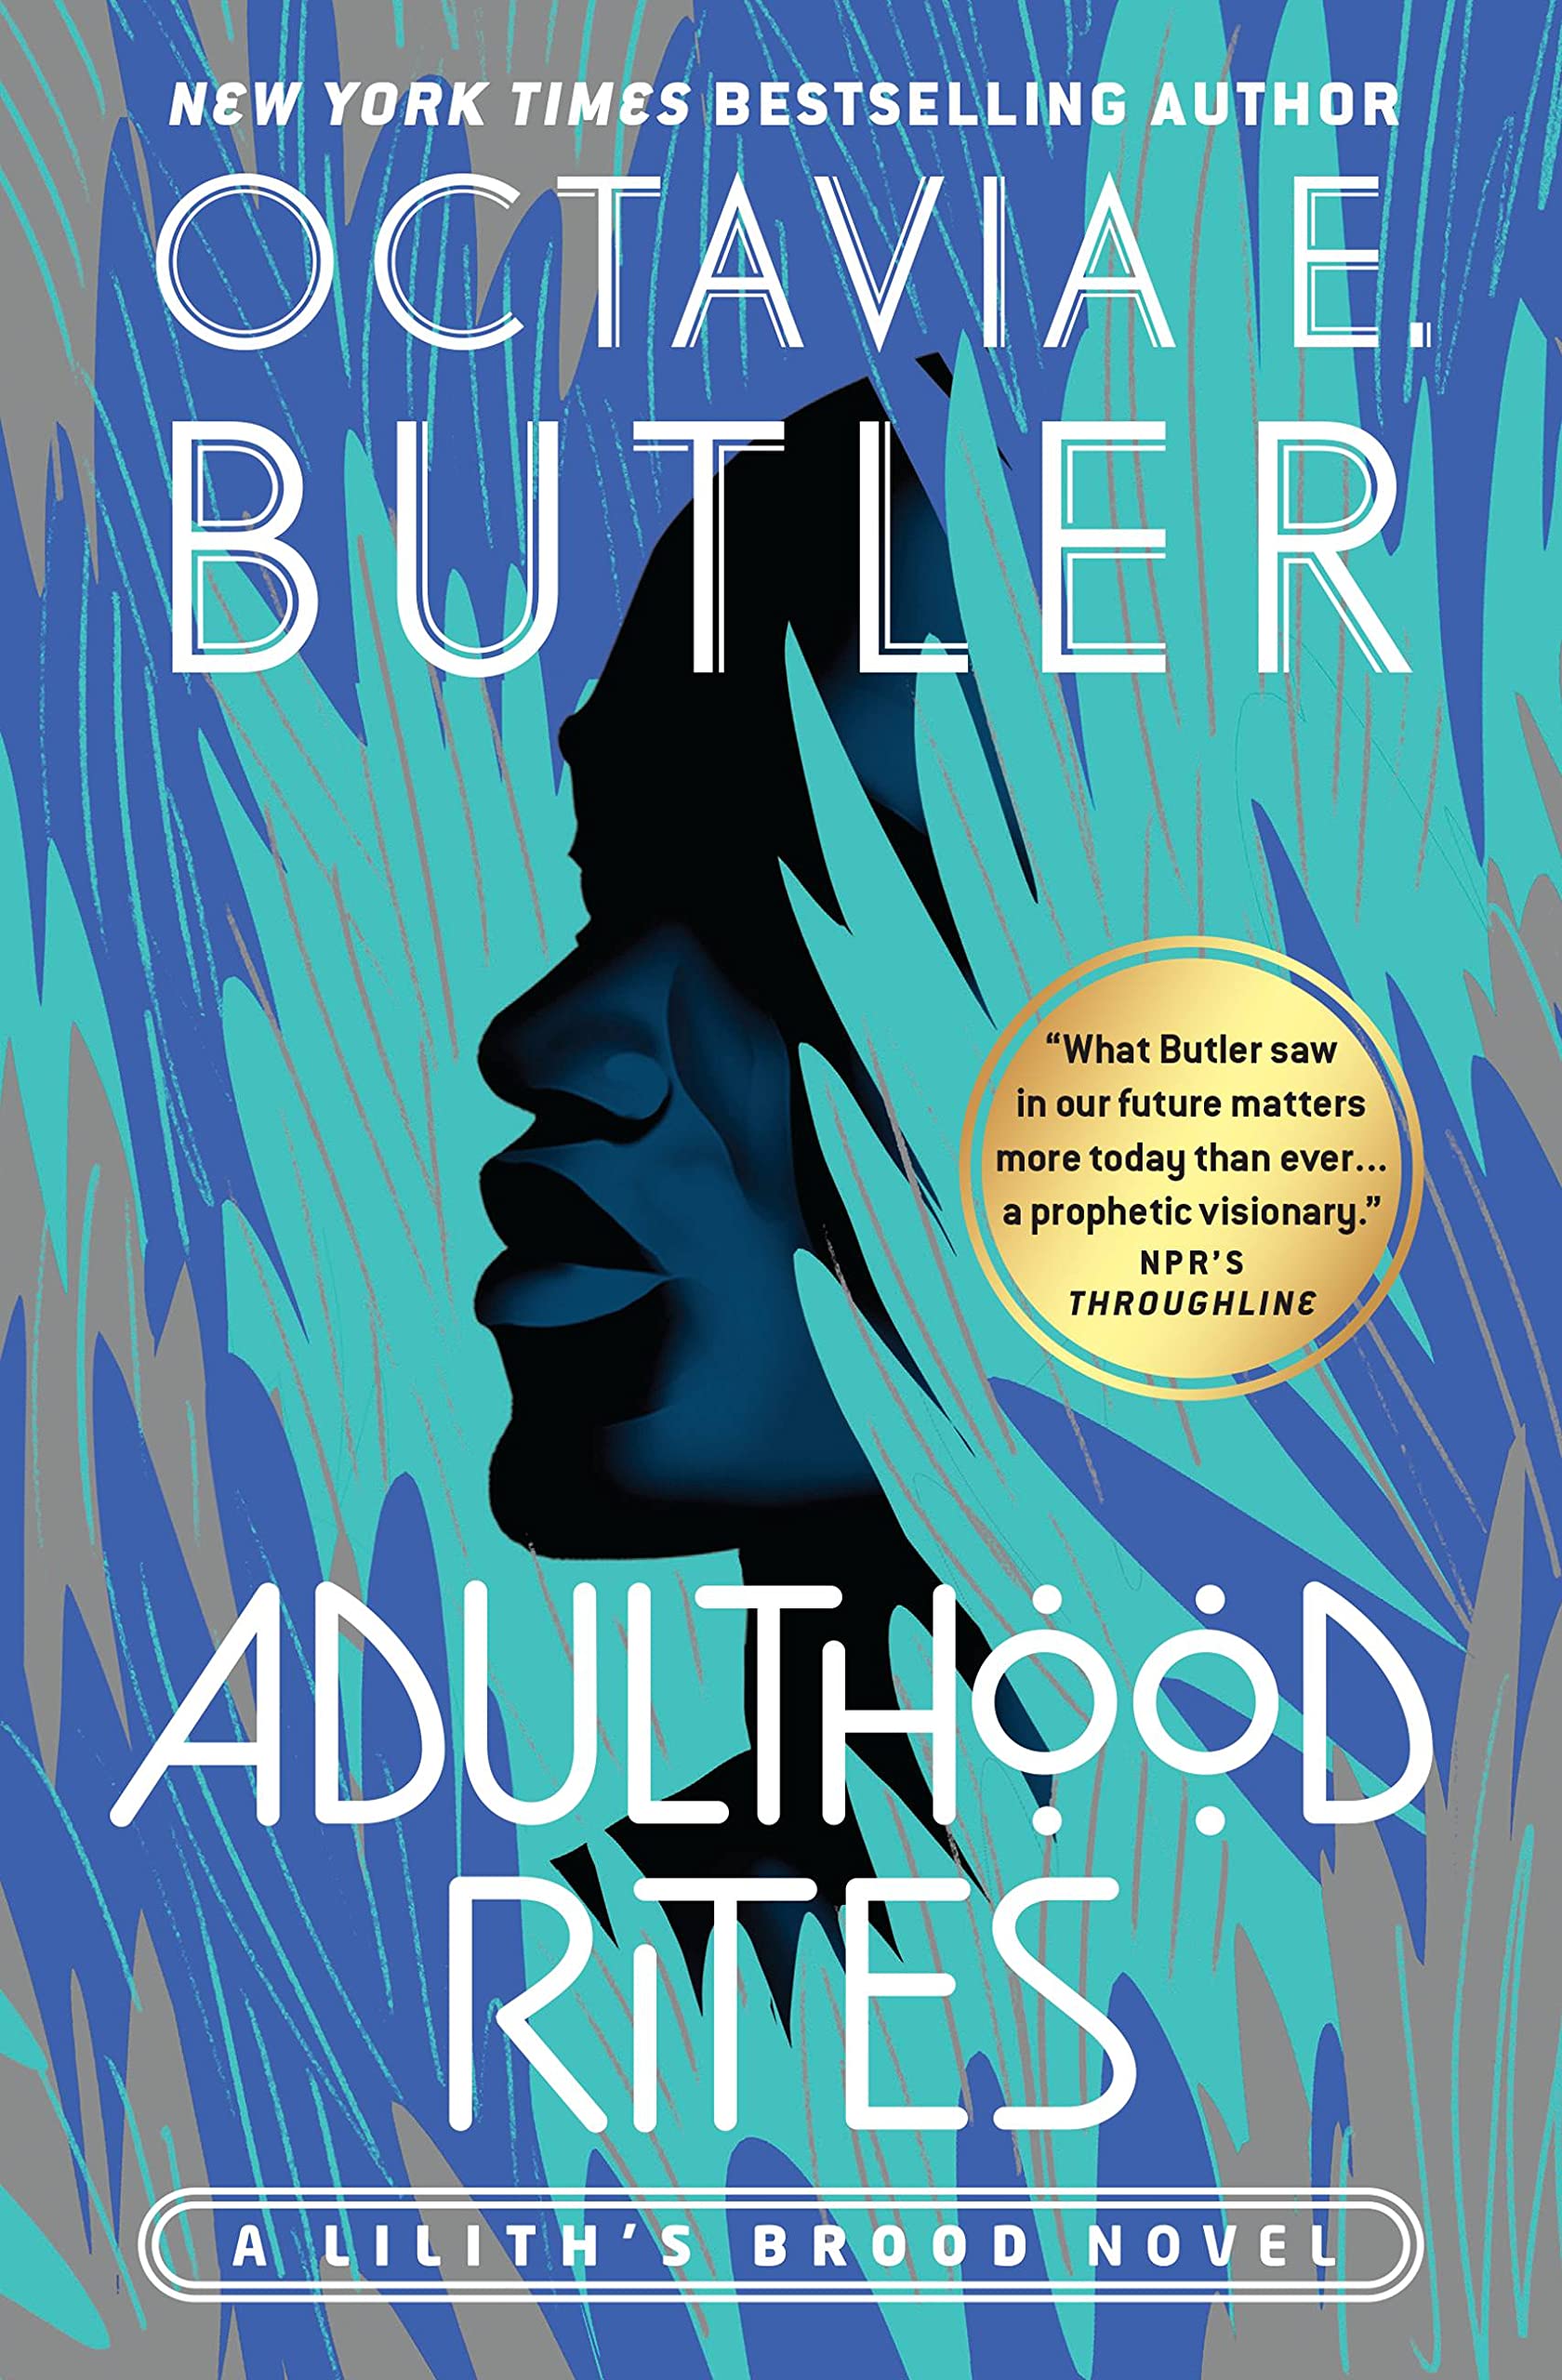 Adulthood Rites | Octavia E. Butler